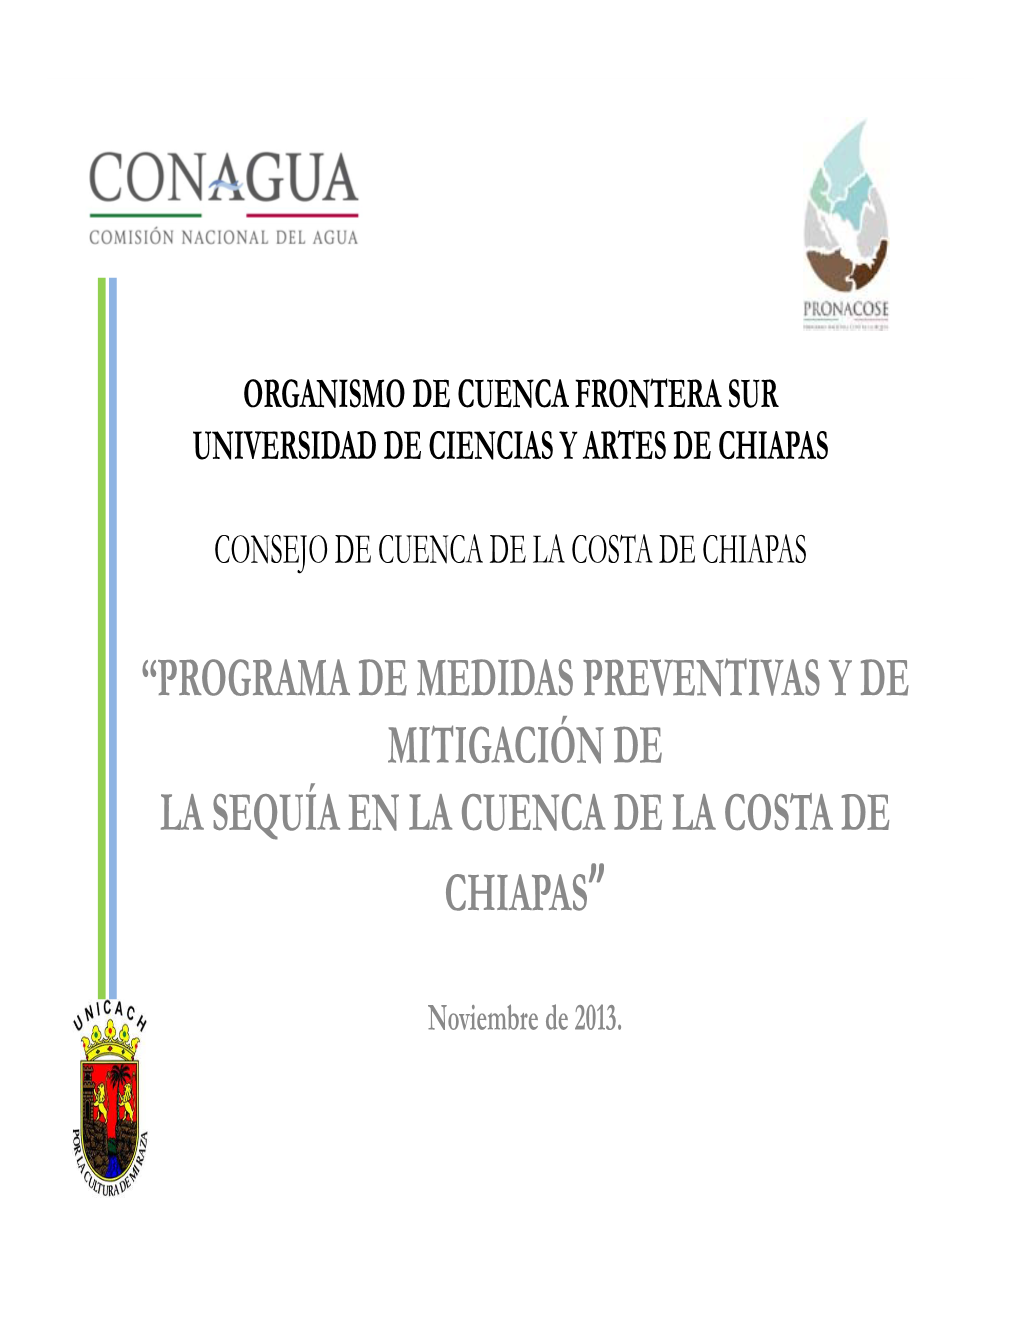 “Programa De Medidas Preventivas Y De Mitigación De La Sequía En La Cuenca De La Costa De Chiapas”